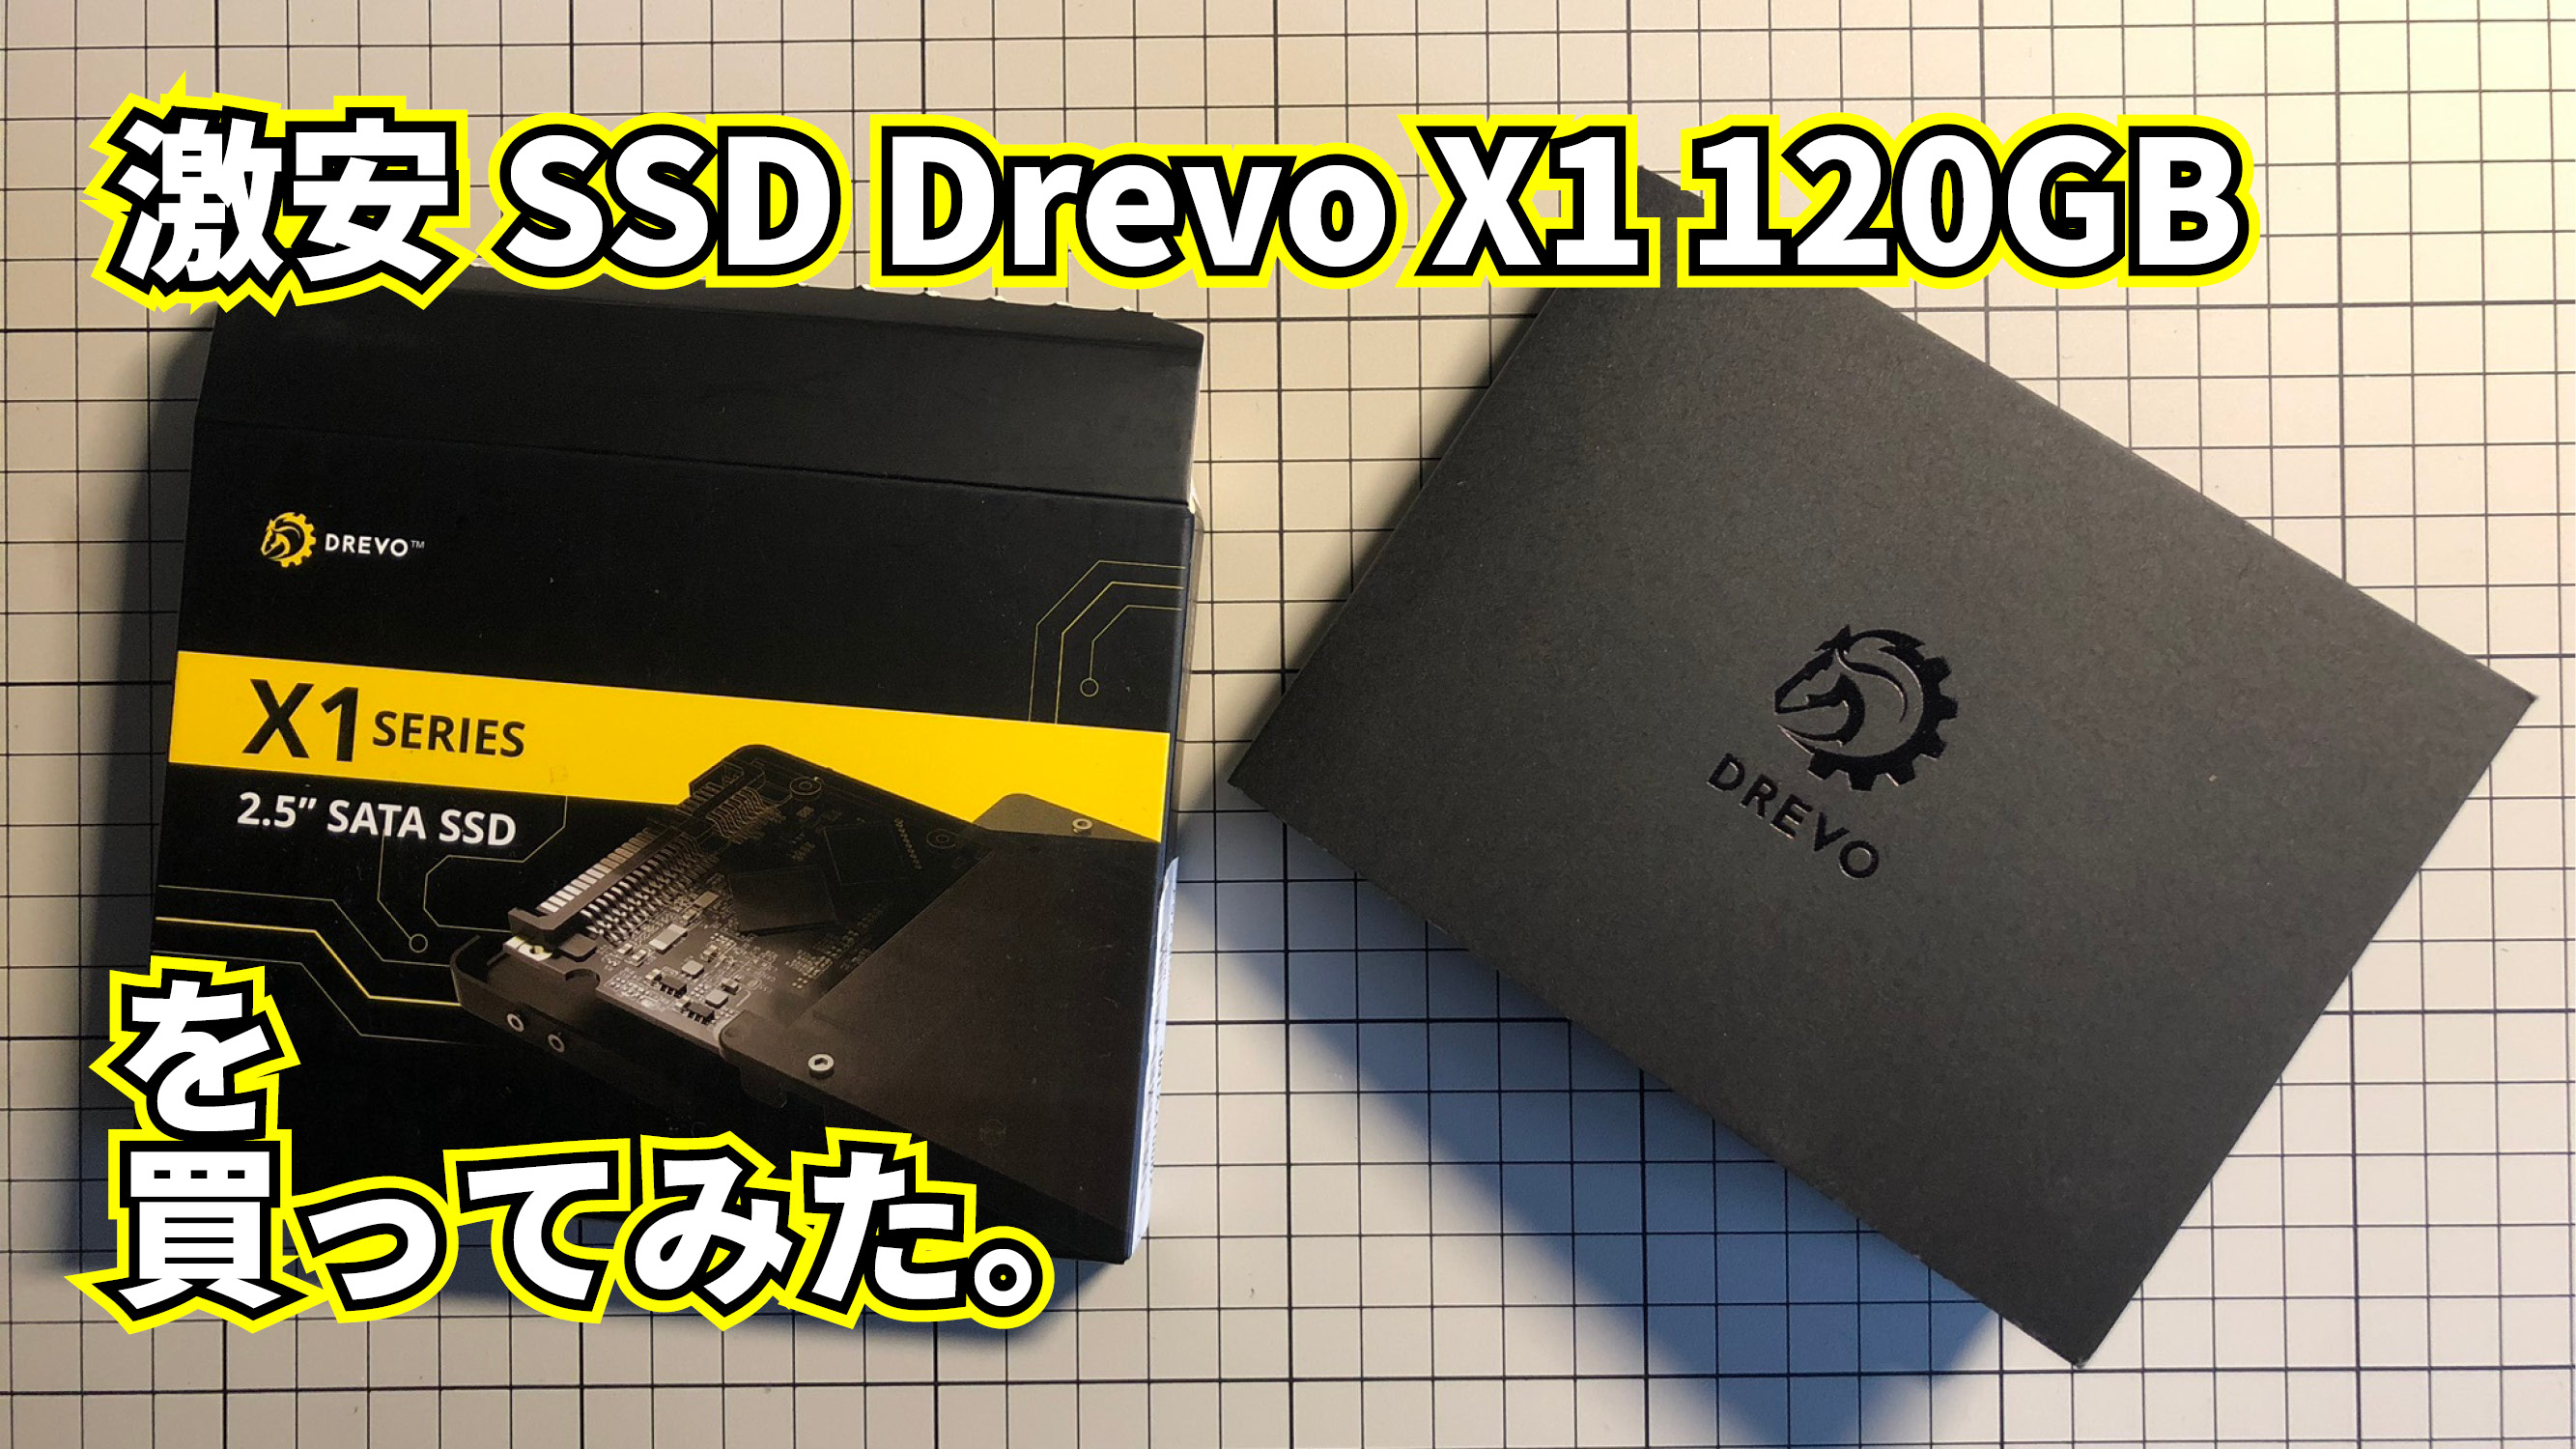 【激安SSD】DREVO X1 SSD 120GB を買ってみた。